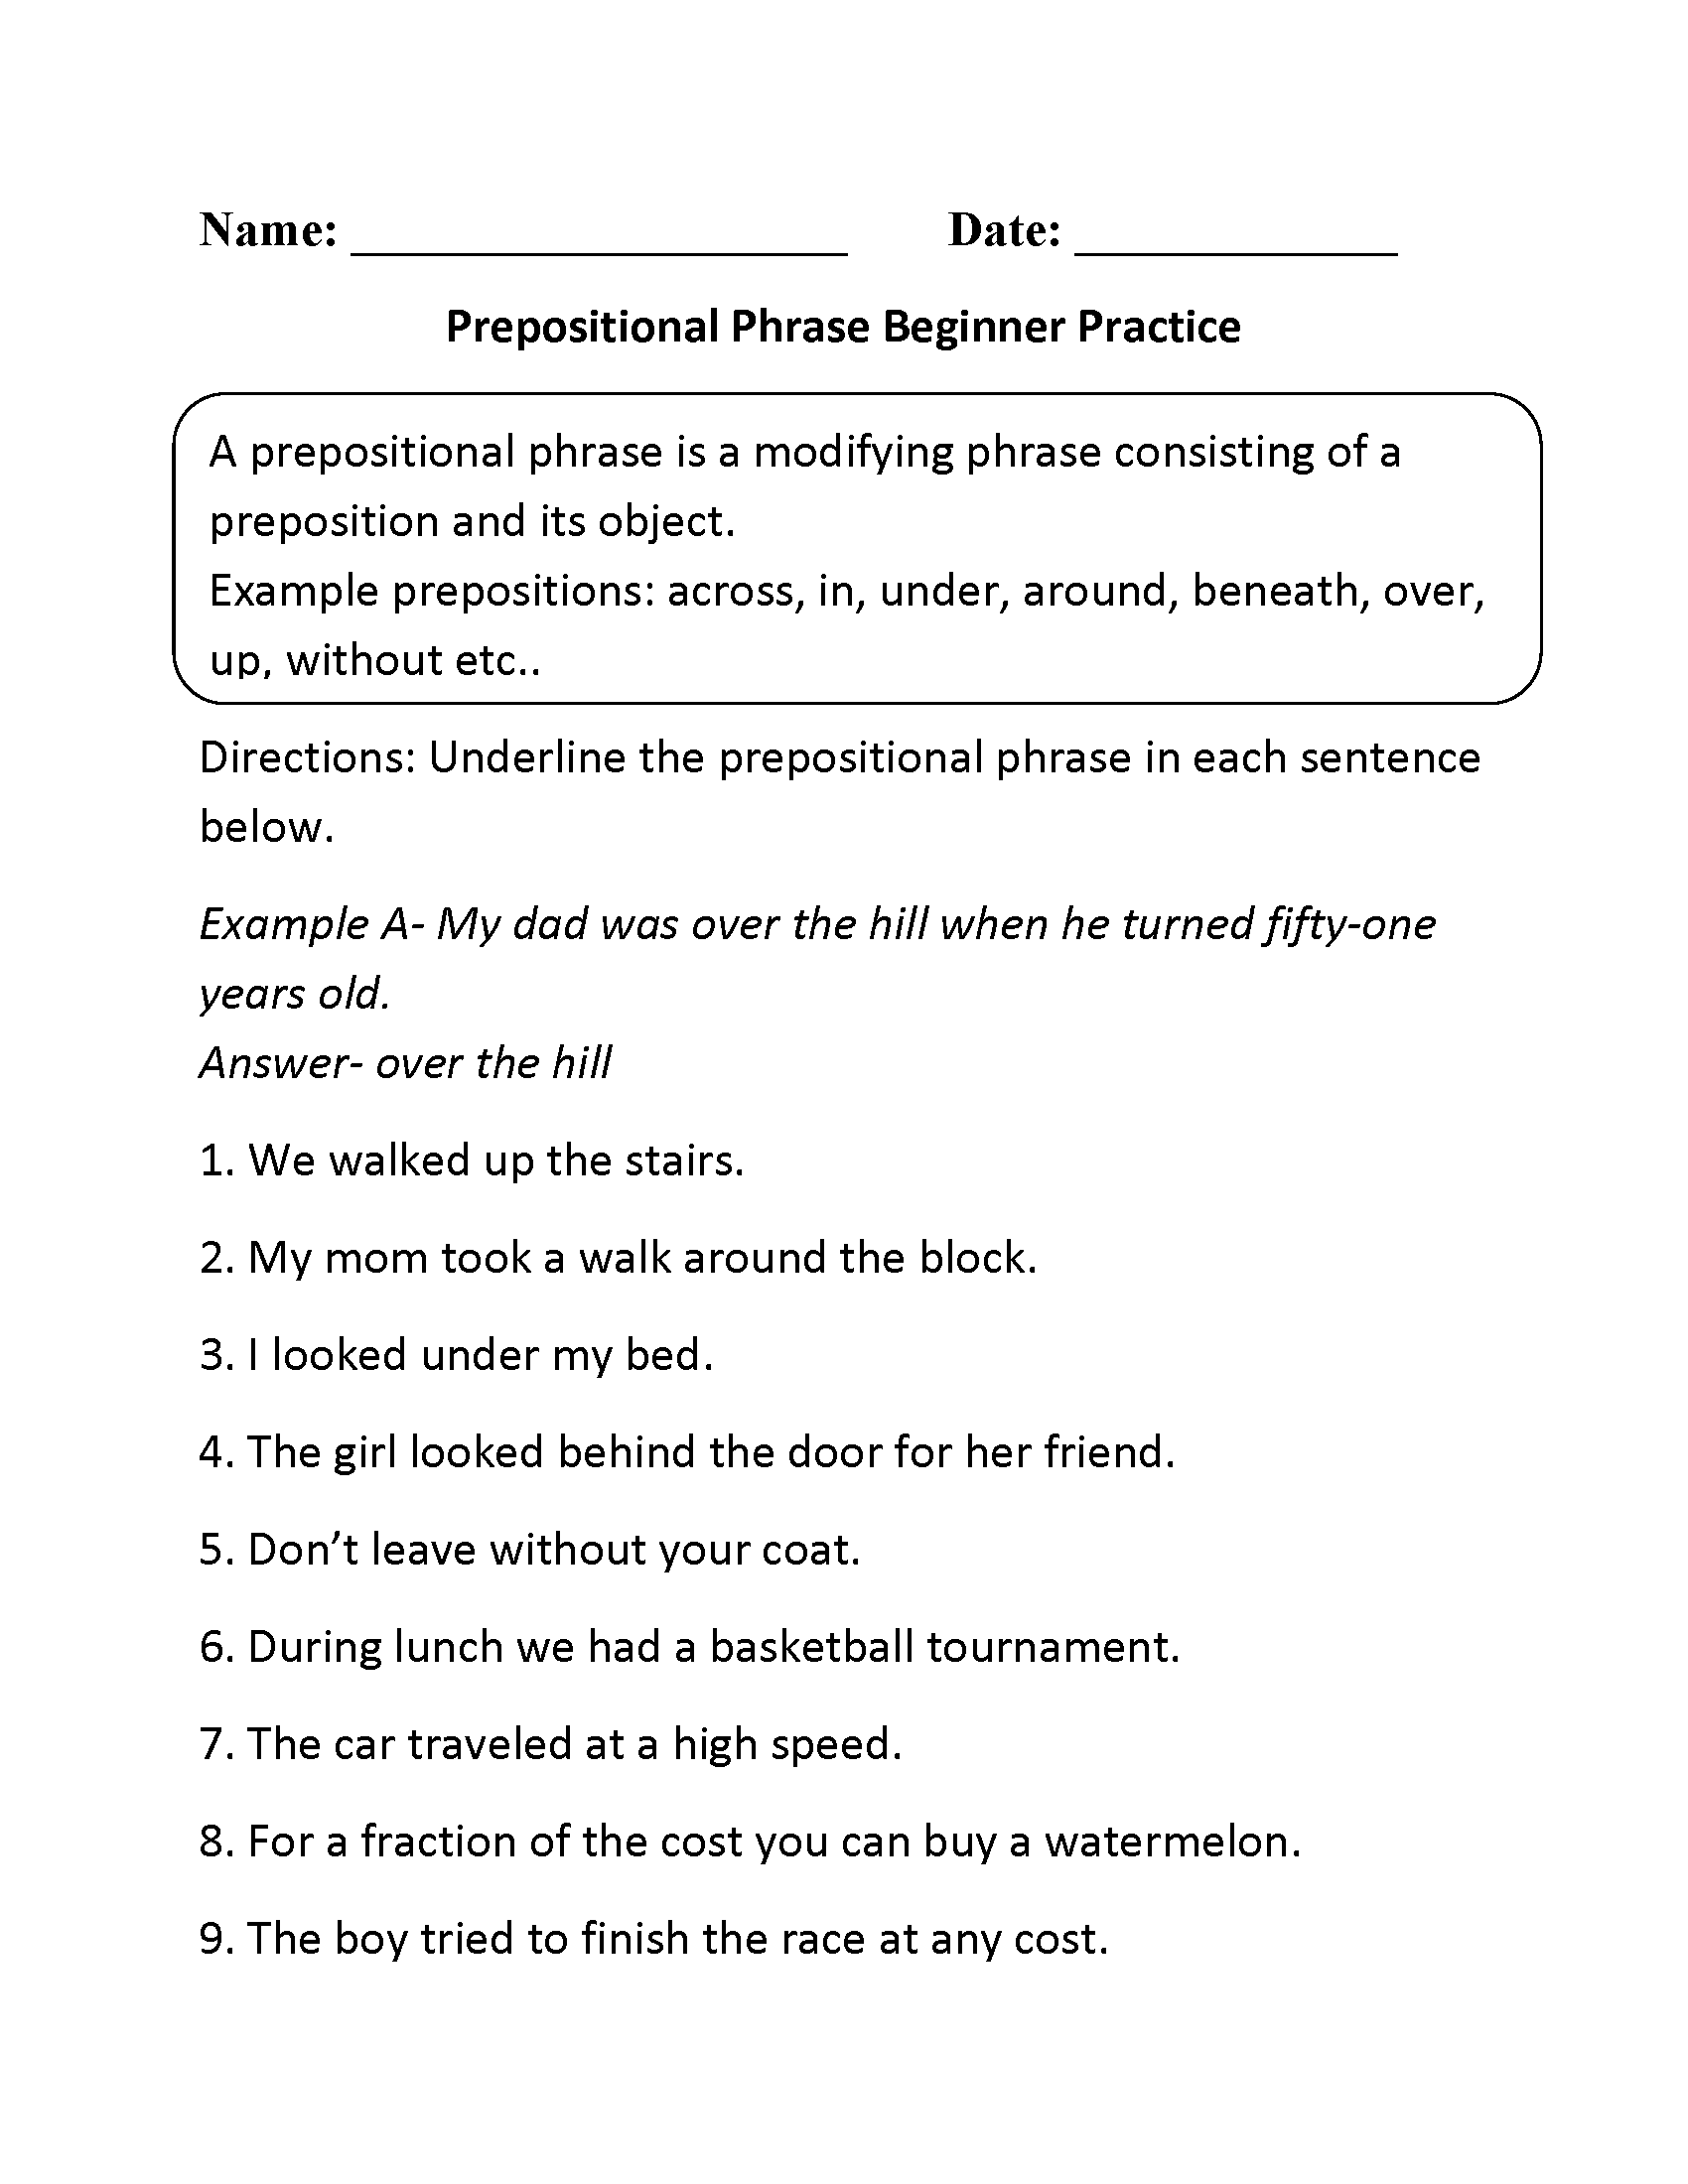 Prepositional Phrase Beginner Practice Worksheet